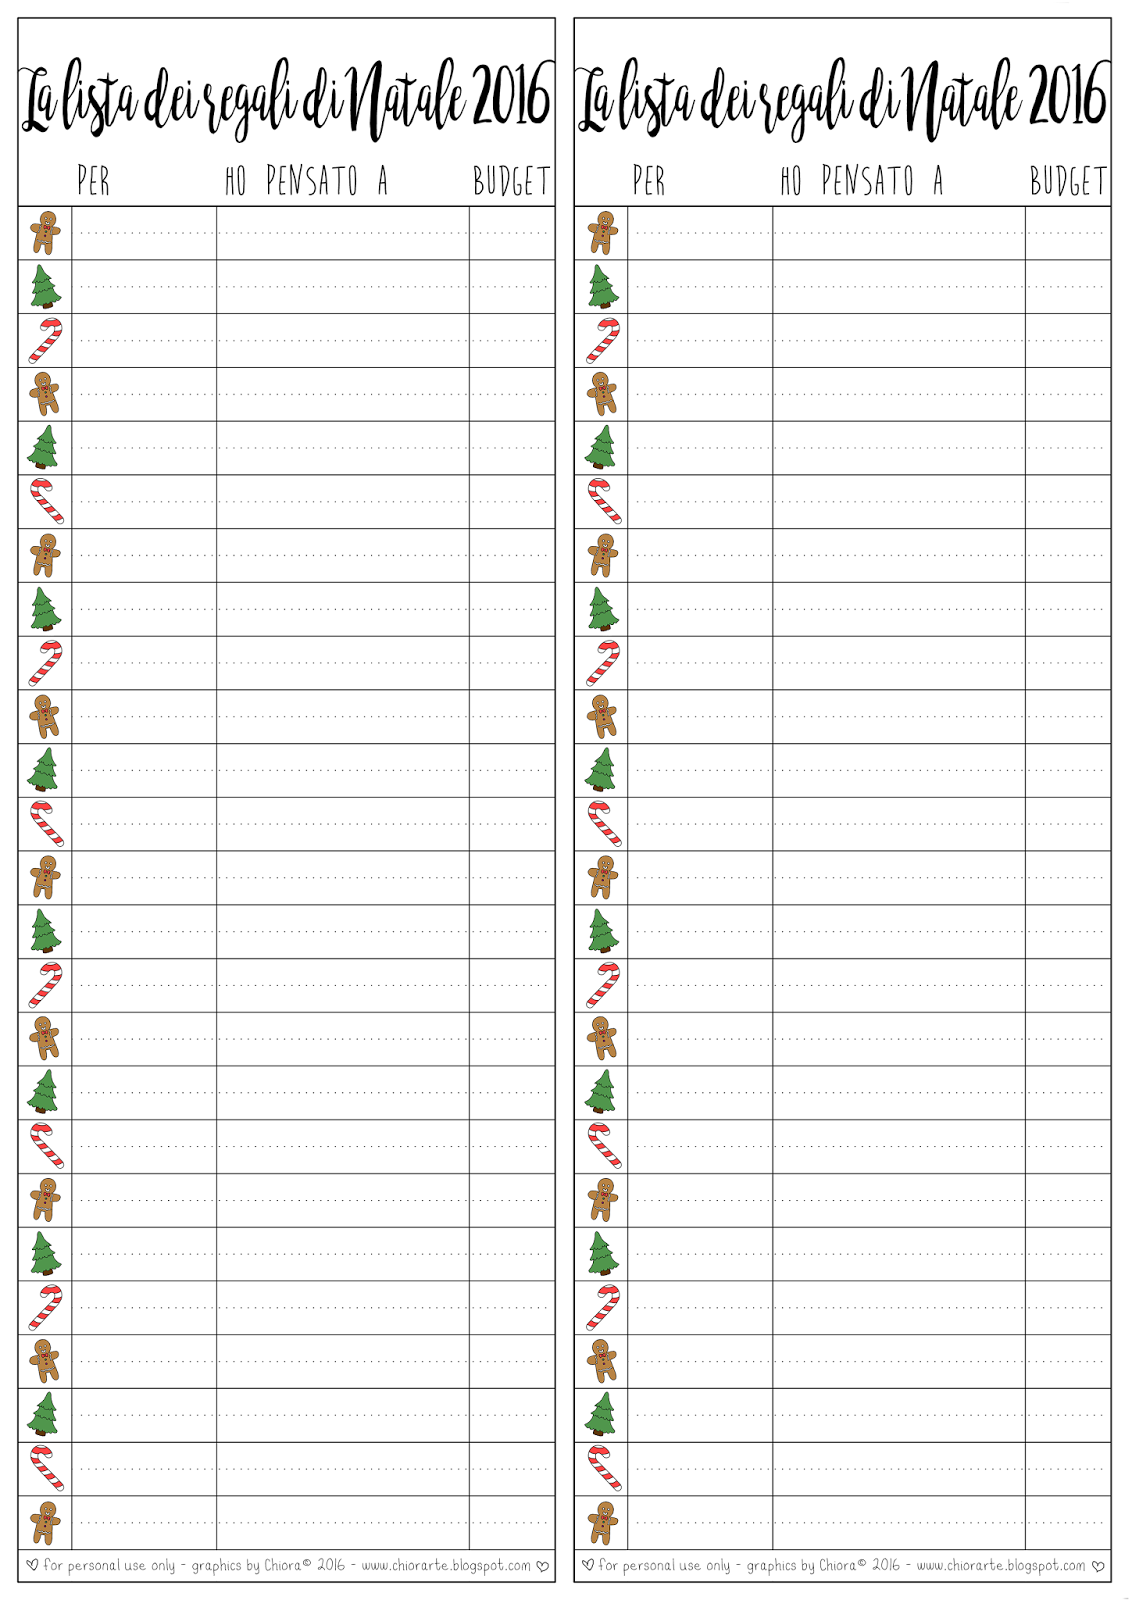 Lista Dei Regali Di Natale.Printables 4 La Lista Dei Regali Di Natale Da Stampare E Compilare Chiora